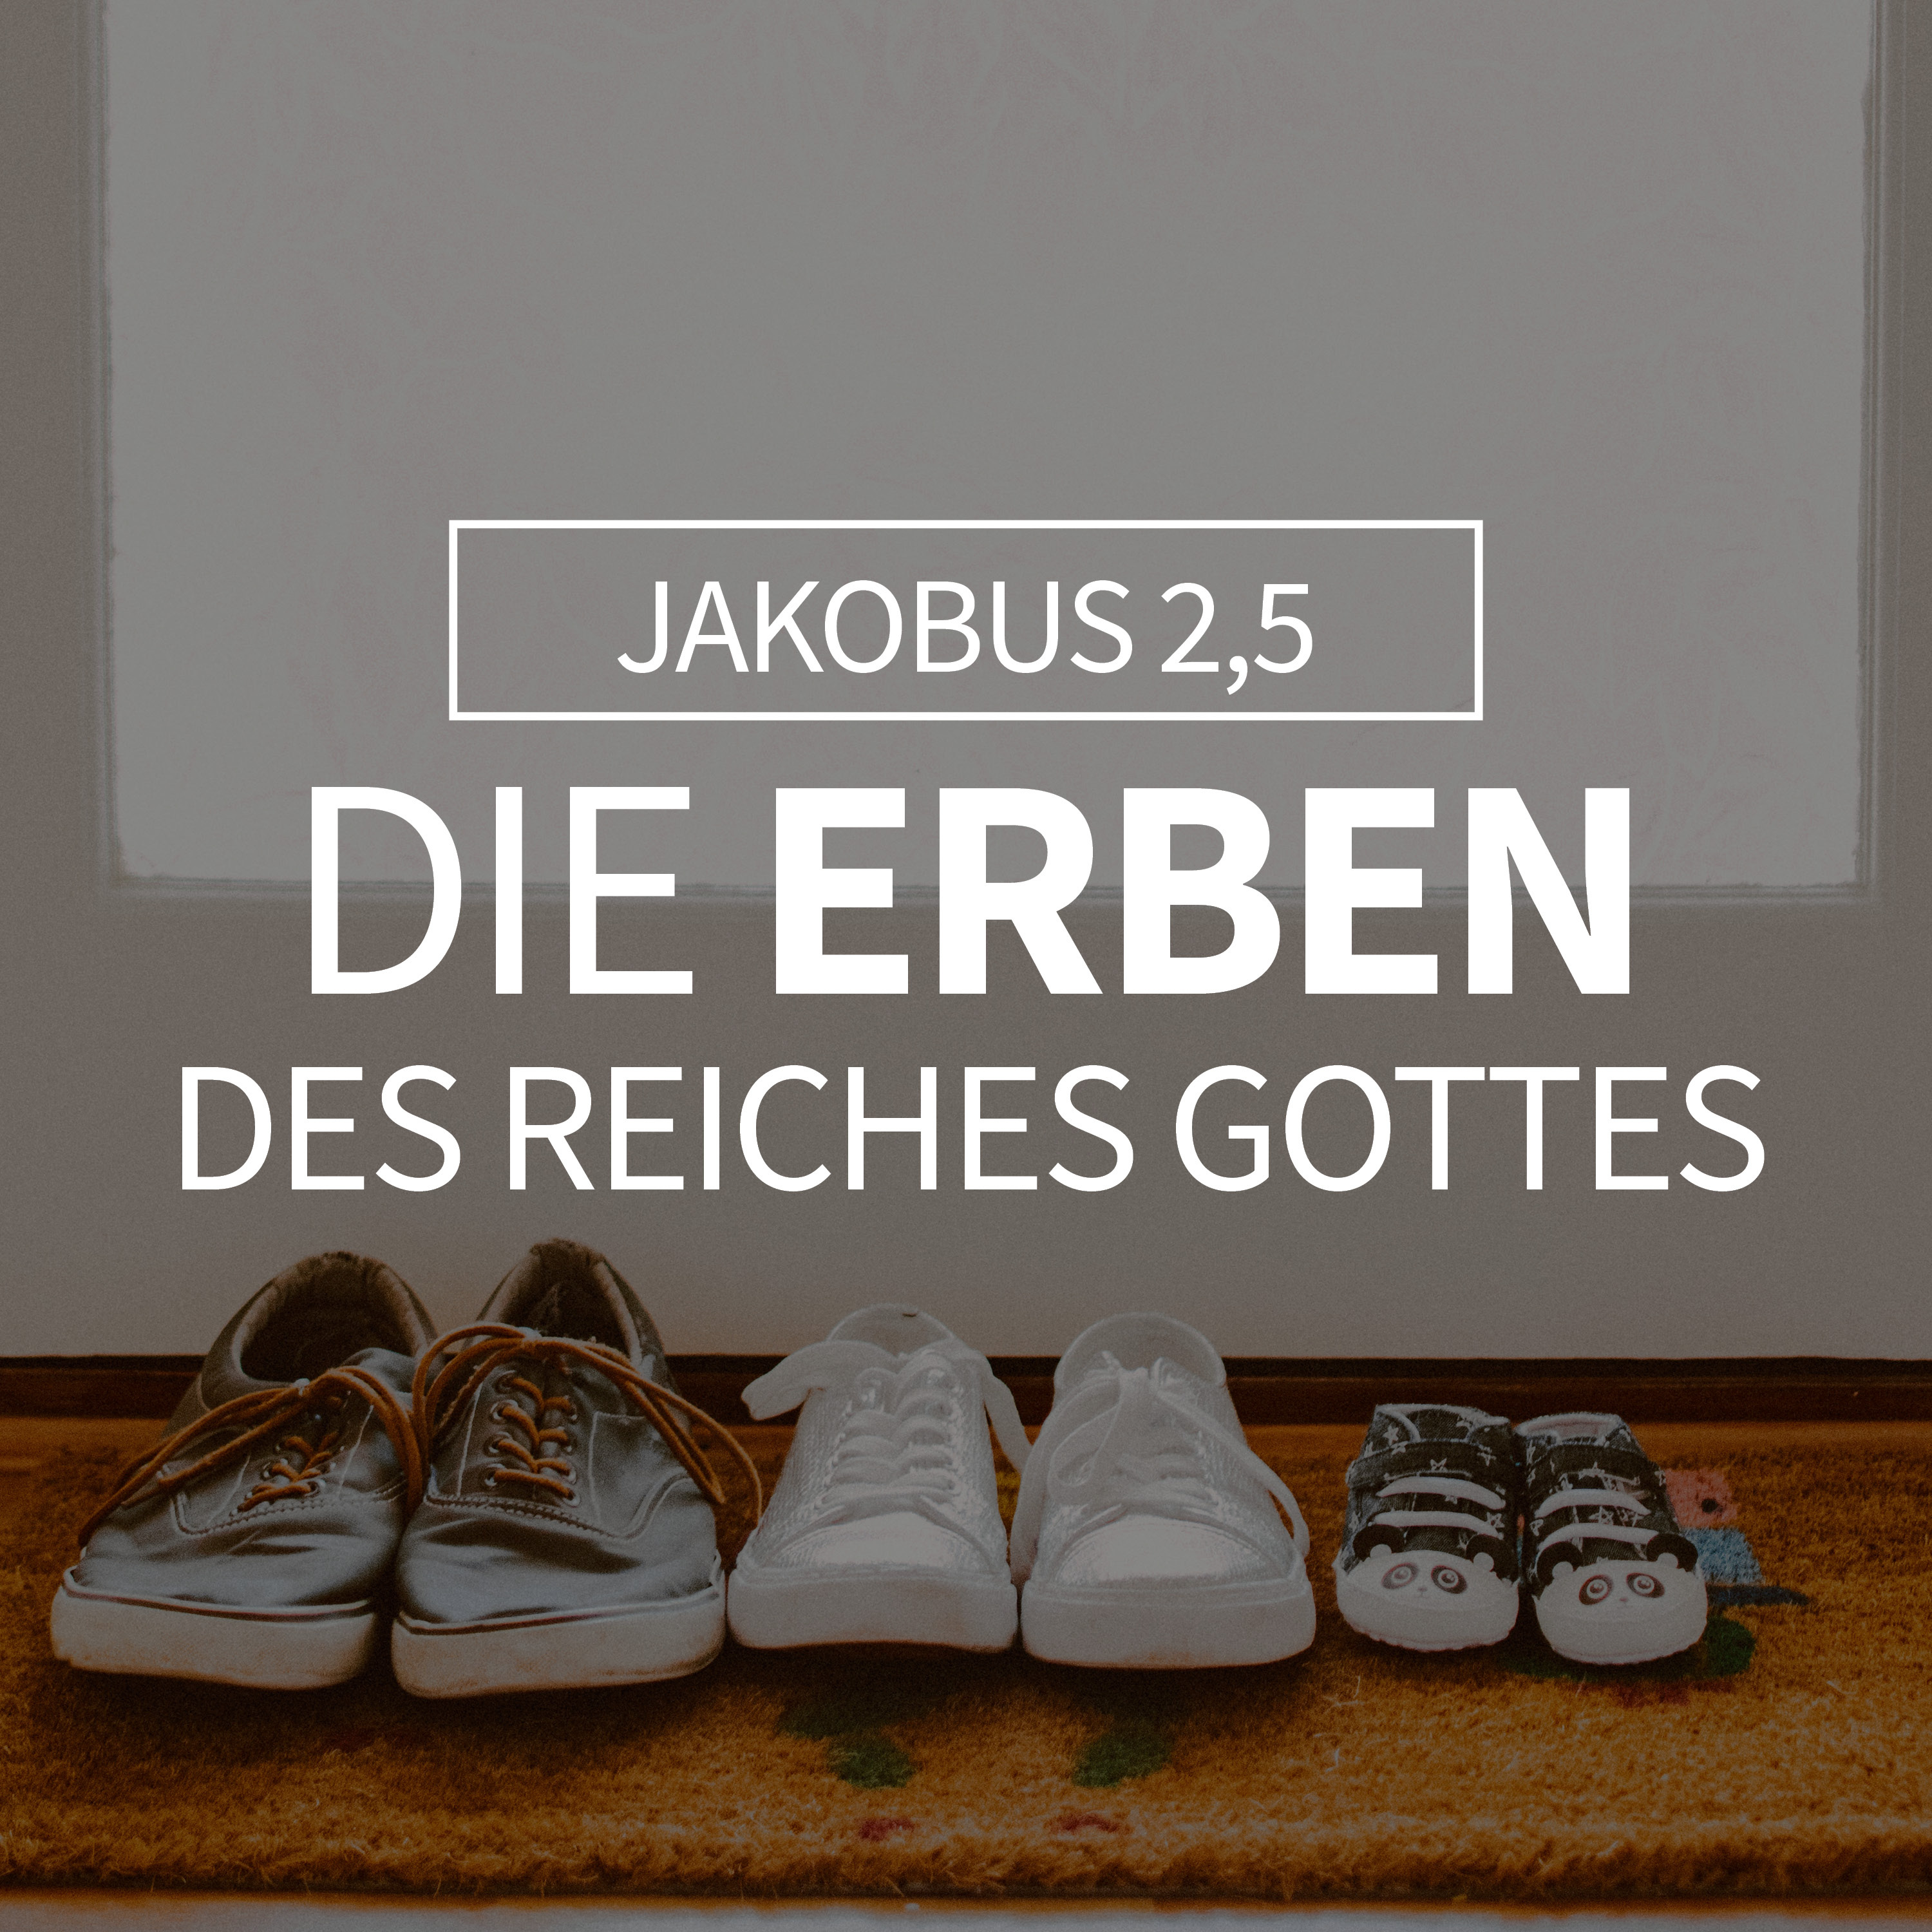 JOBST BITTNER - Die Erben des Reiches Gottes [Jakobus 2,5] hero artwork